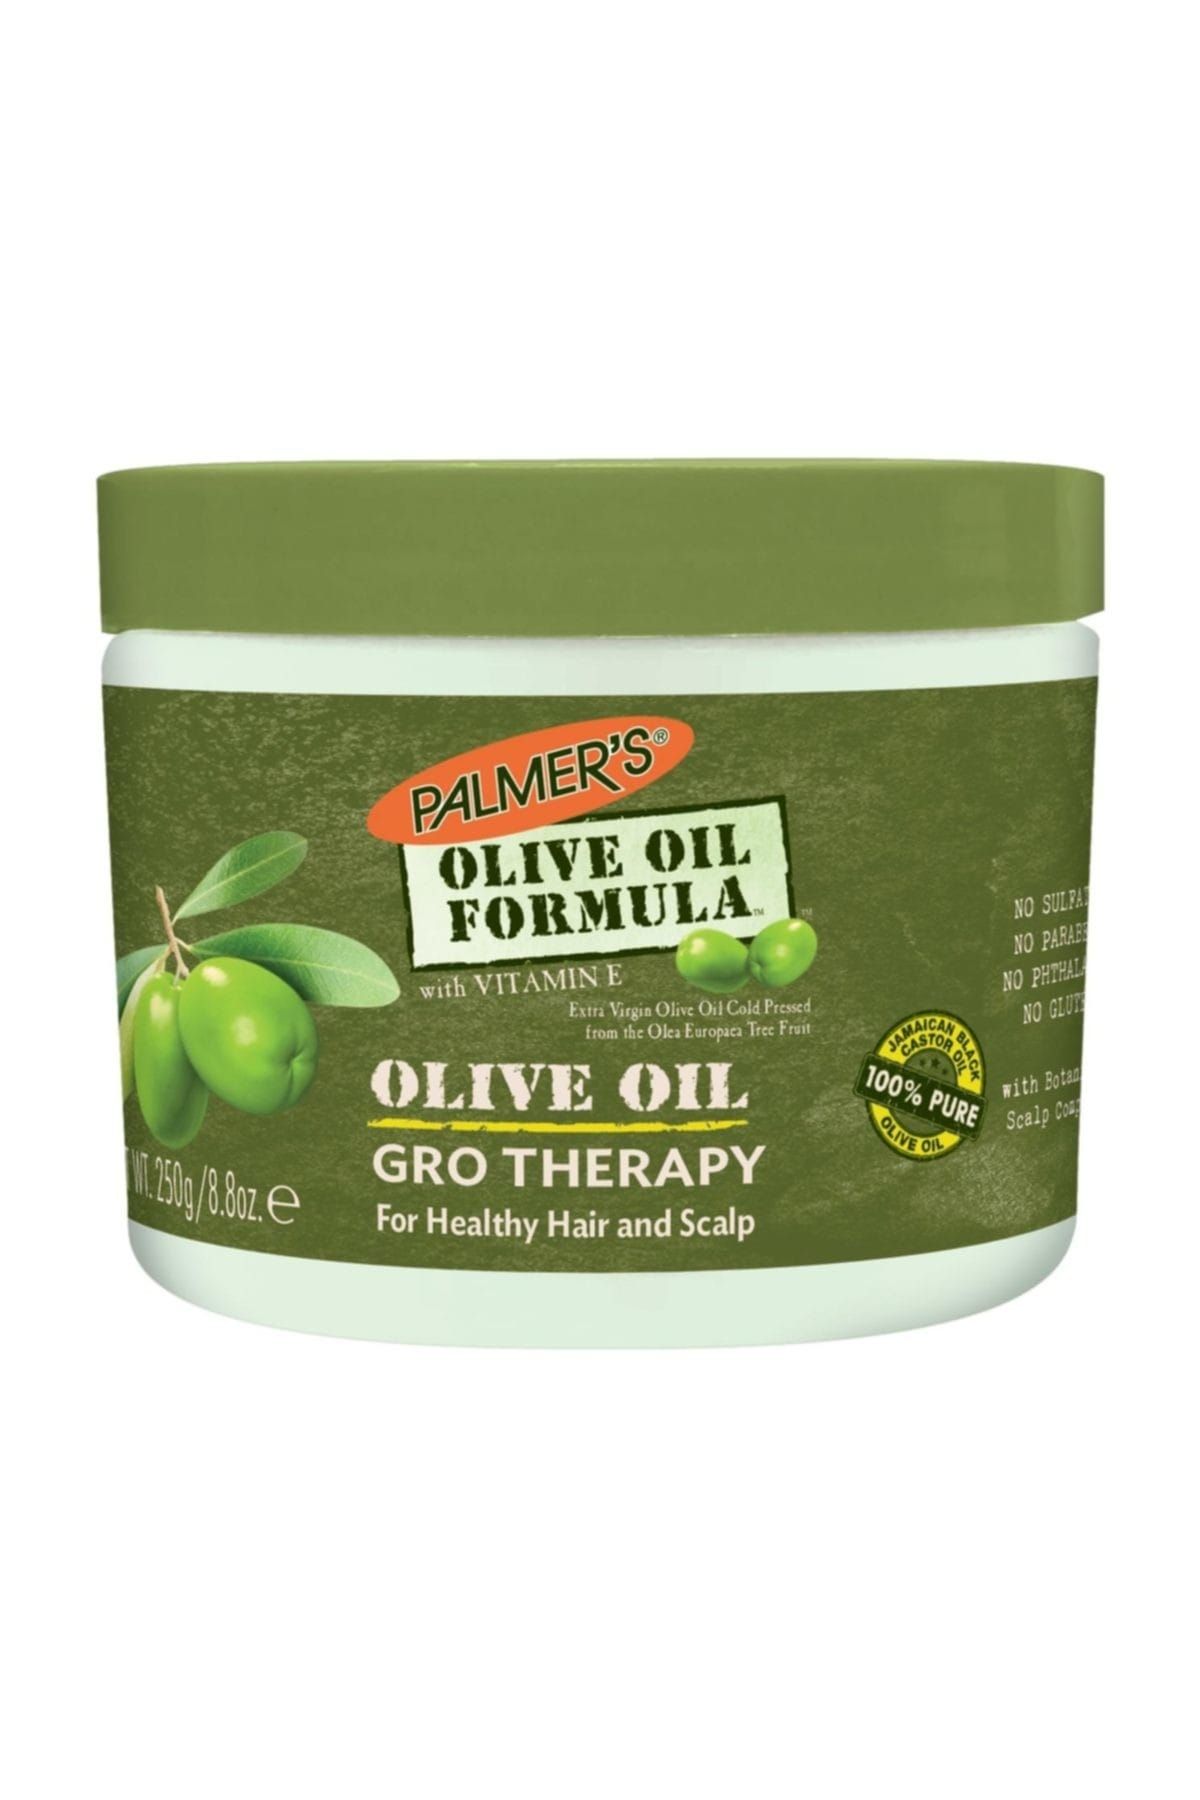 PALMER'S Saç Bakım Kremi - Olive Oil Formula Gro Therapy 250 g 010181025204